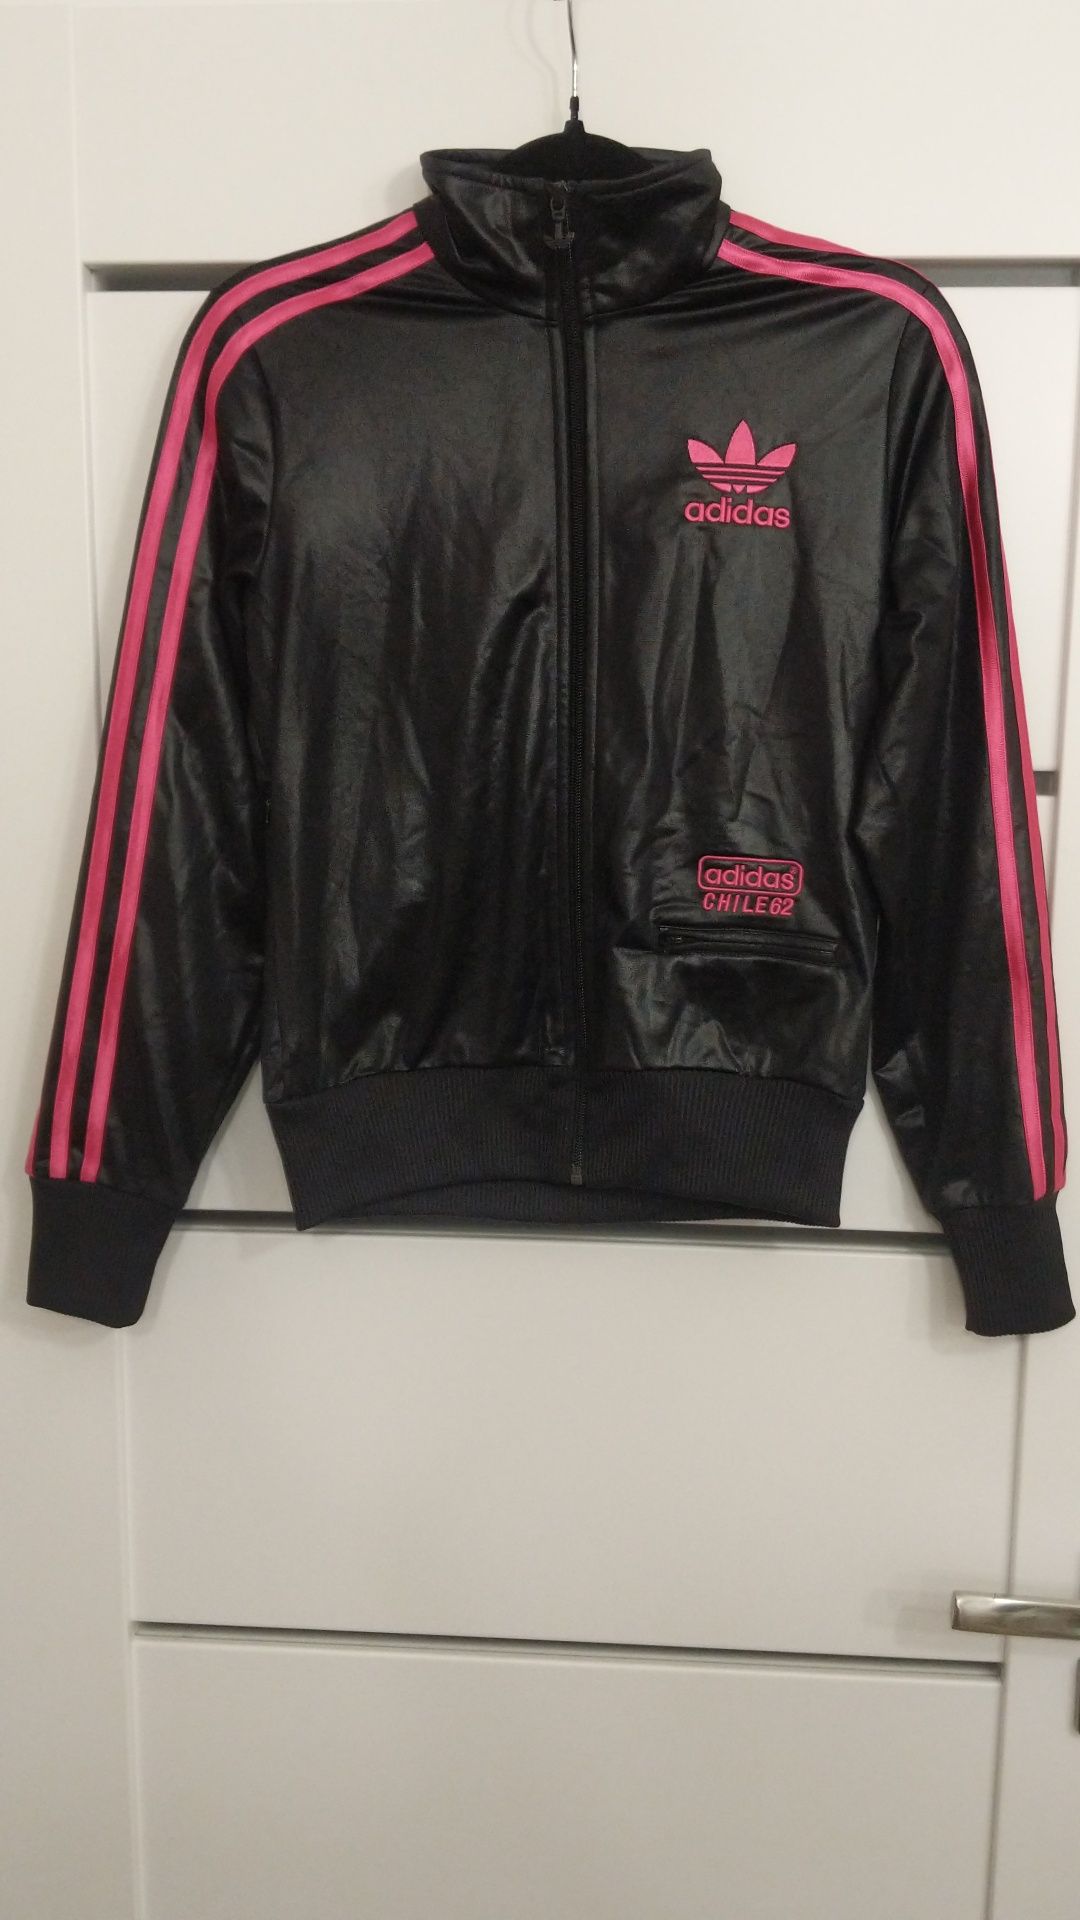 Adidas Chile 62 bluza czarna z różowymi elementami roz. 34